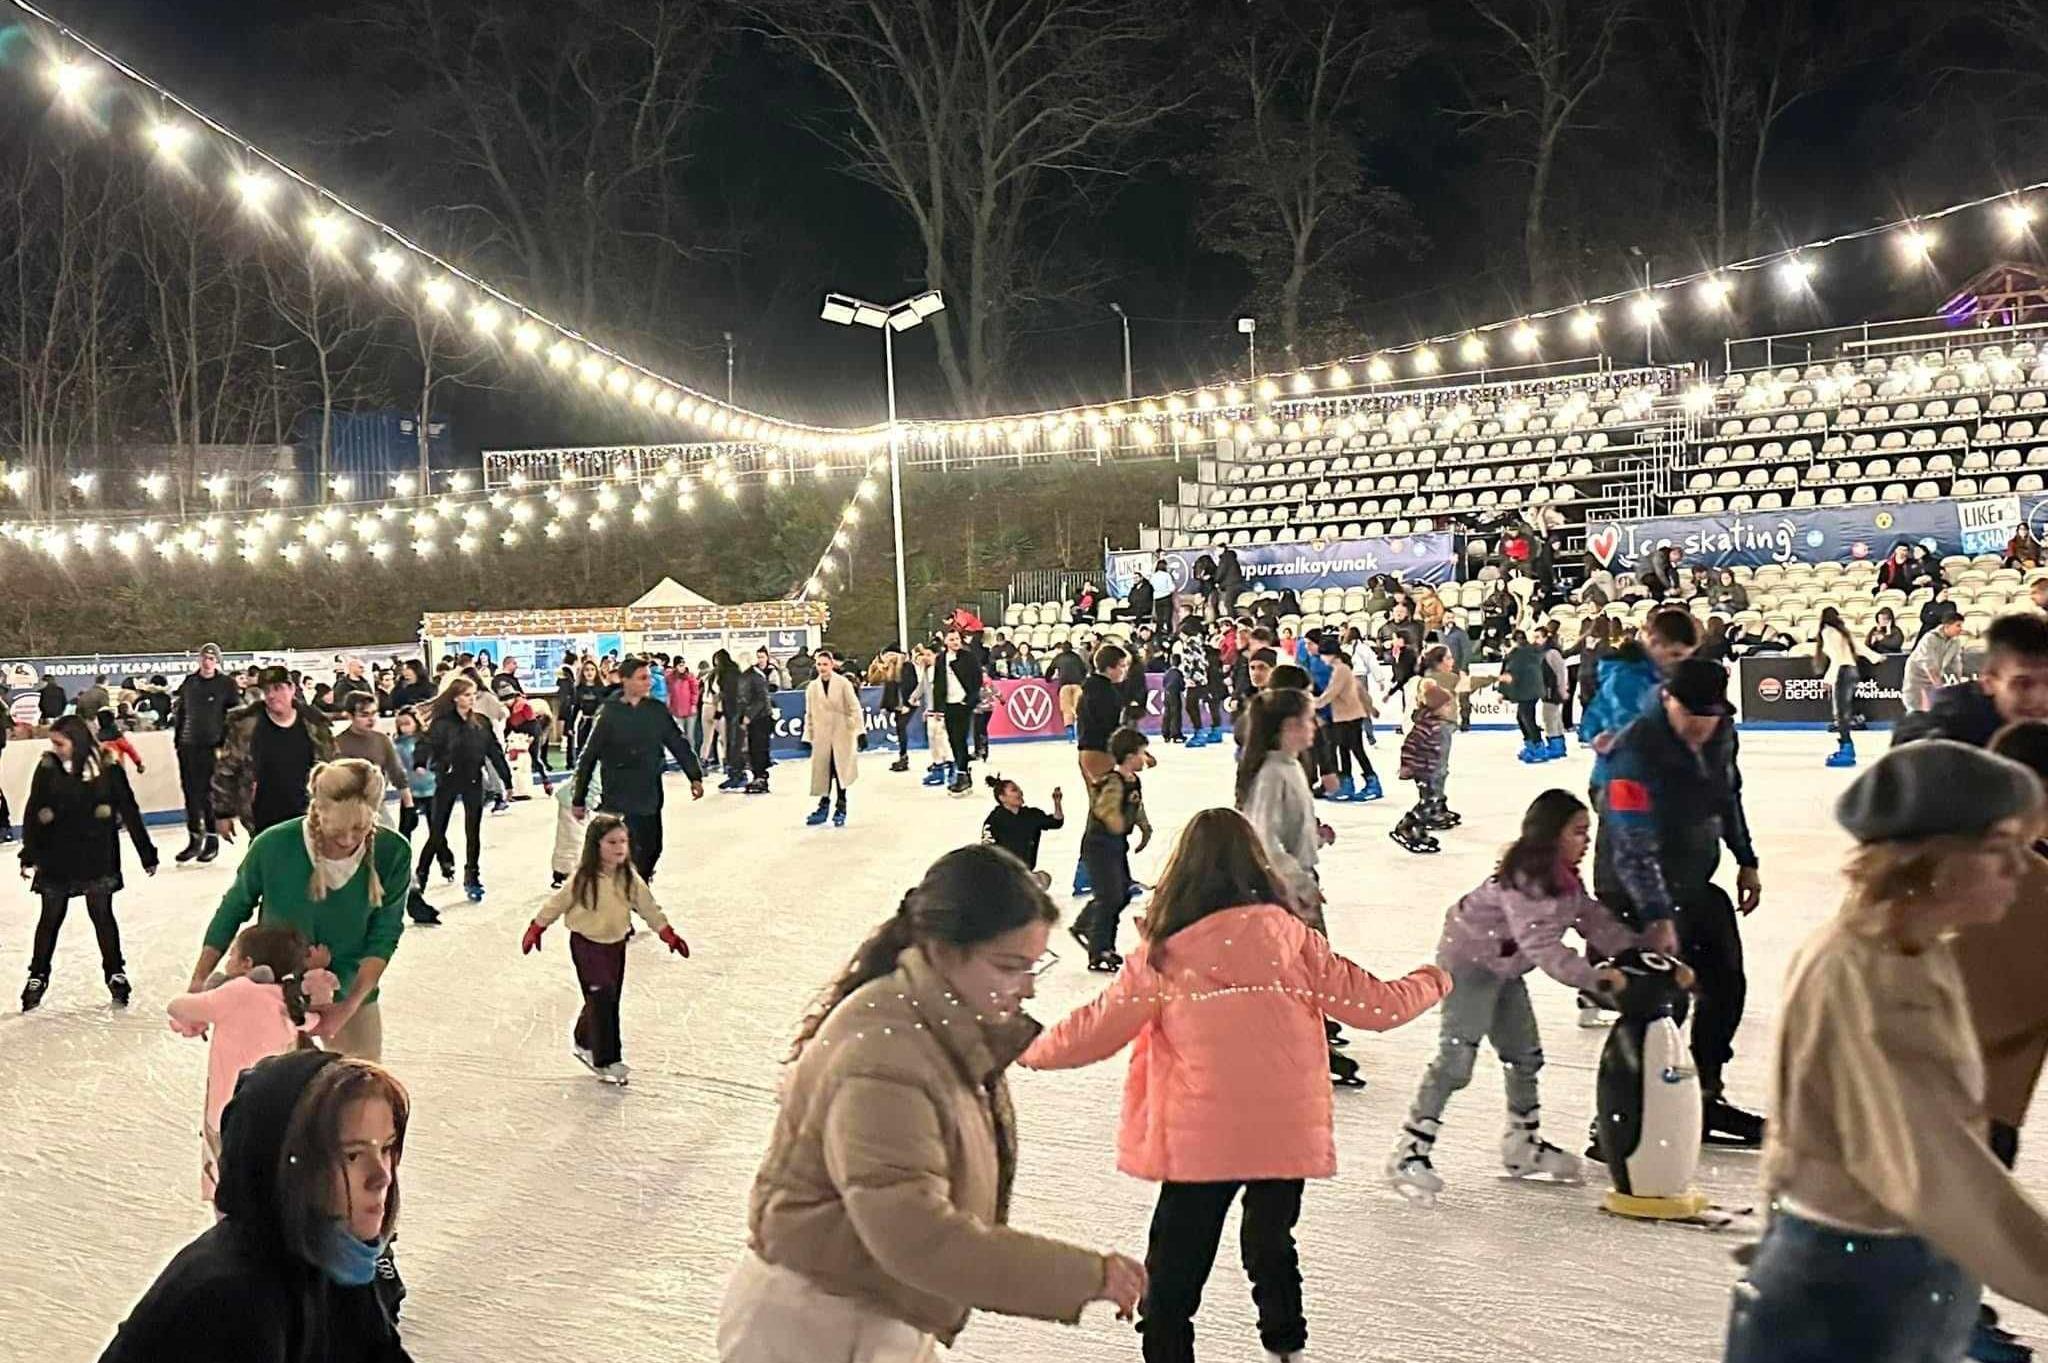 Деца до 13 години с безплатно посещение на ледената пързалка Юнак в София